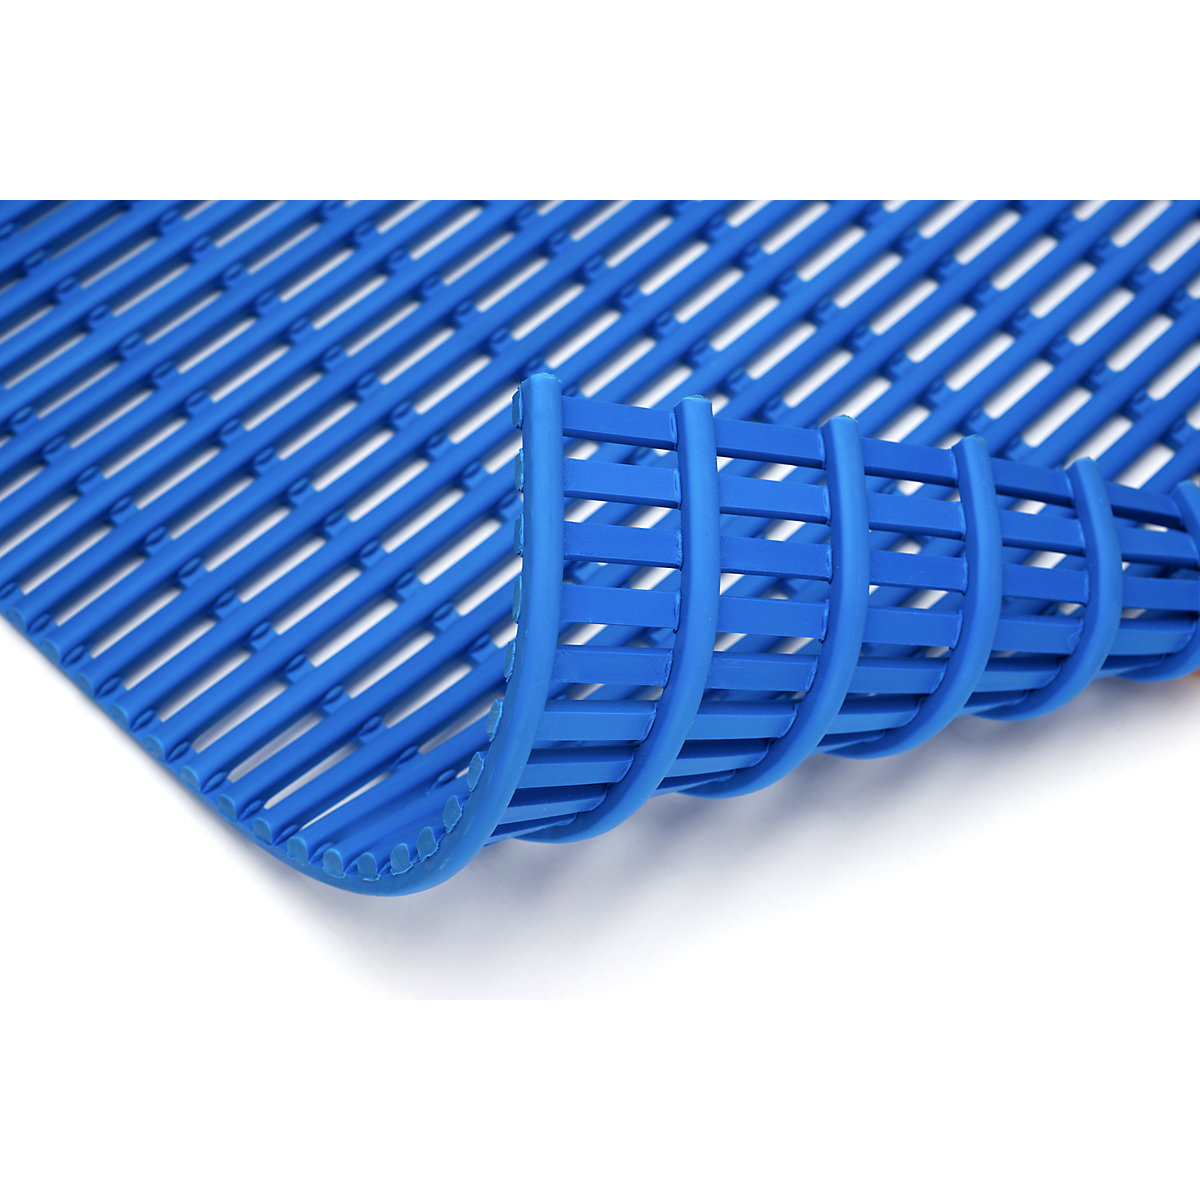 Podlahová rohož, bez obsahu PVC, role 10 m, modrá, šířka 600 mm